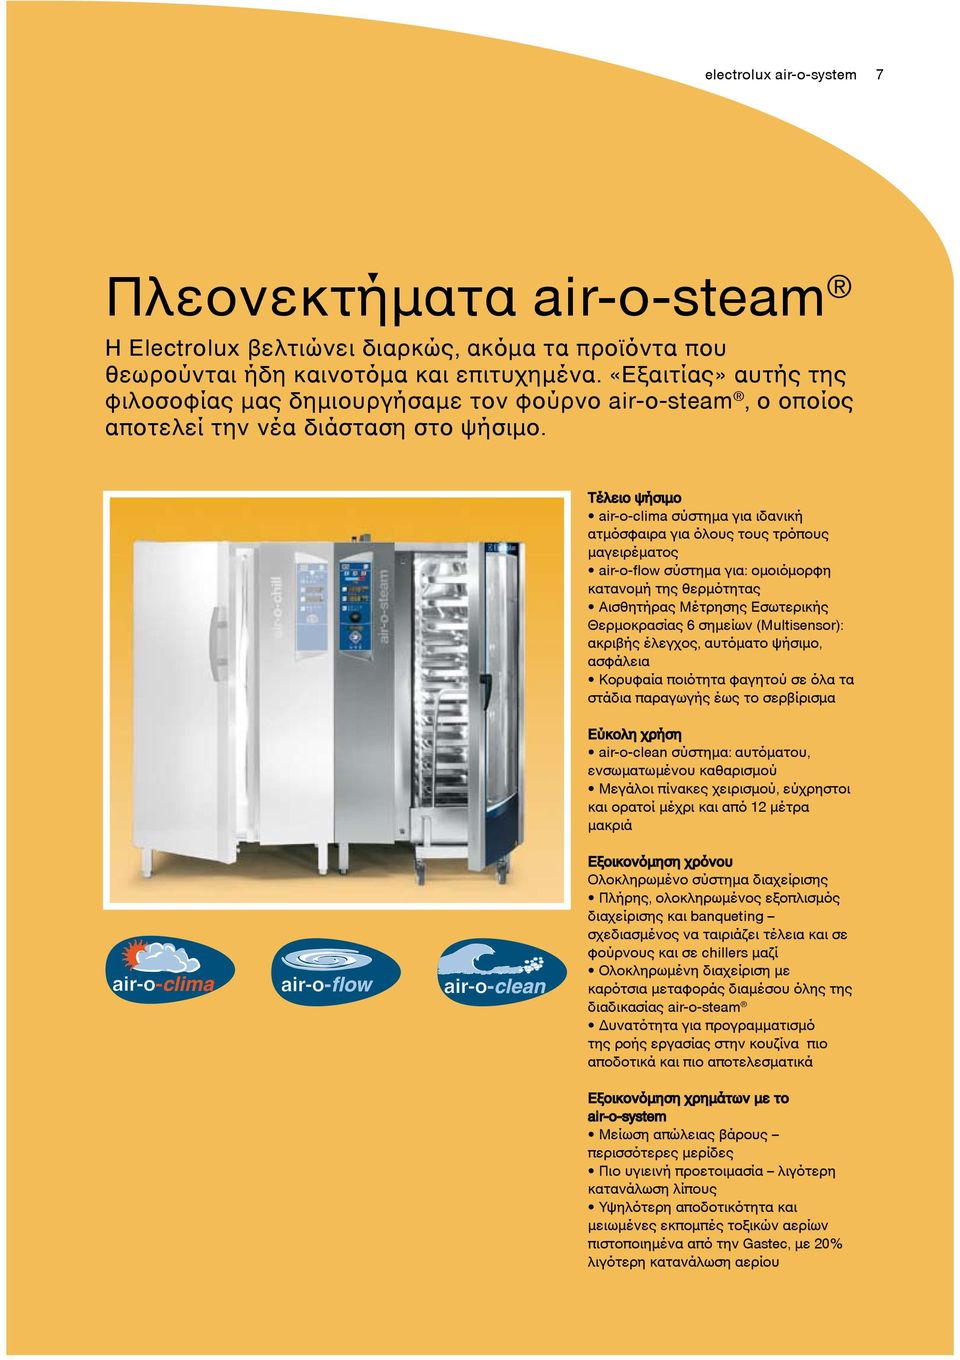 Τέλειο ψήσιμο air-o-clima σύστημα για ιδανική ατμόσφαιρα για όλους τους τρόπους μαγειρέματος air-o-flow σύστημα για: ομοιόμορφη κατανομή της θερμότητας Αισθητήρας Μέτρησης Εσωτερικής Θερμοκρασίας 6